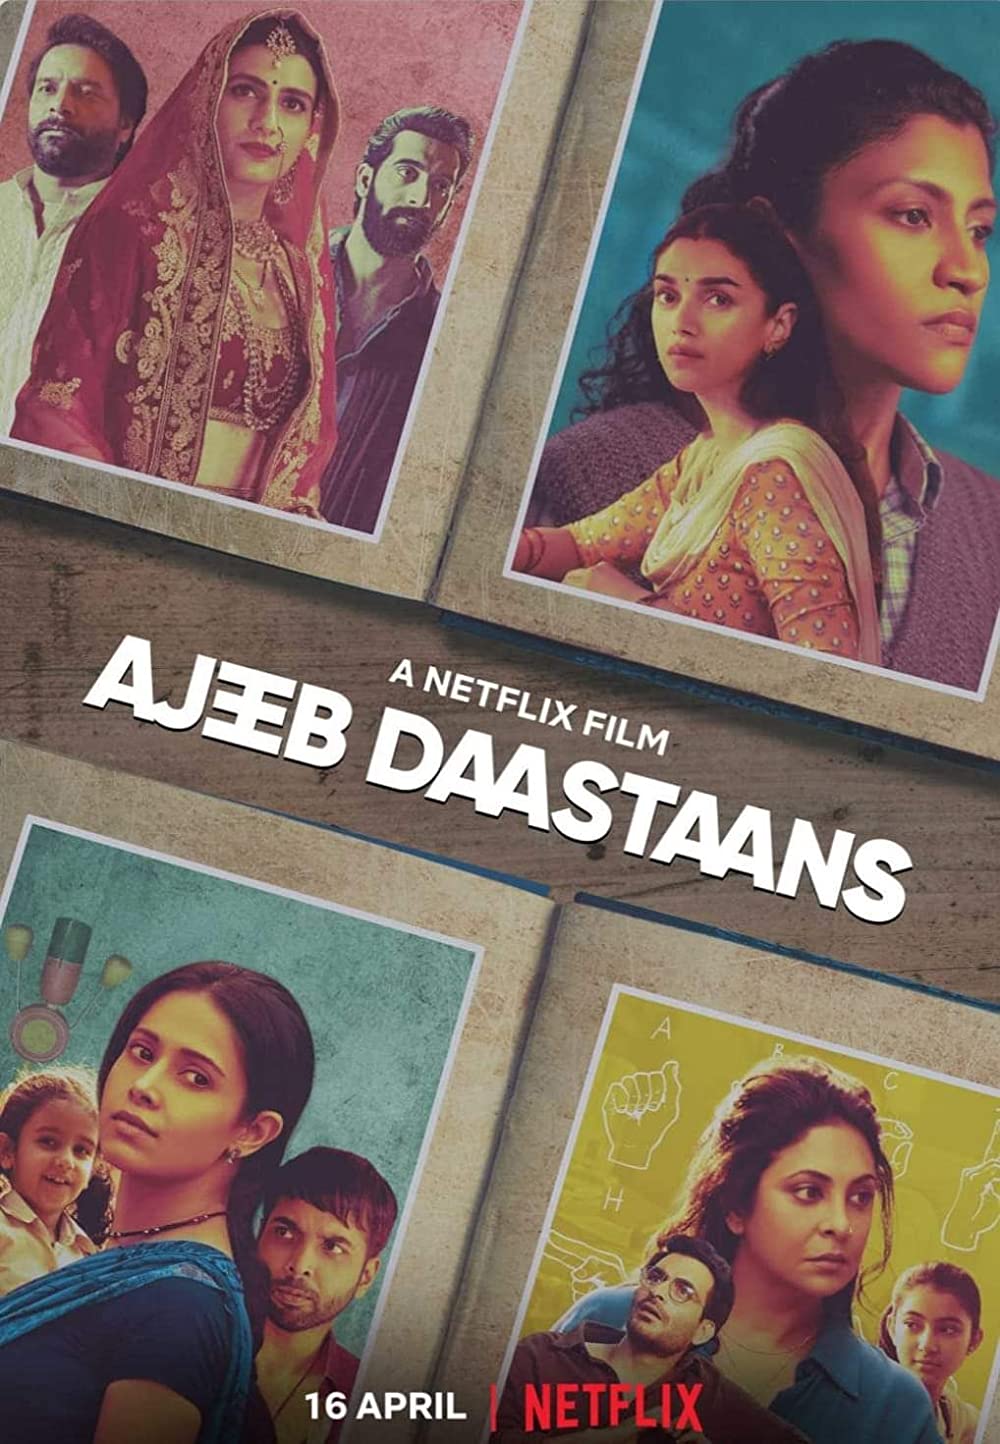 ดูหนังออนไลน์ฟรี ดูหนังใหม่ Netflix Ajeeb Daastaans 2021 ส่วนเกิน movie678